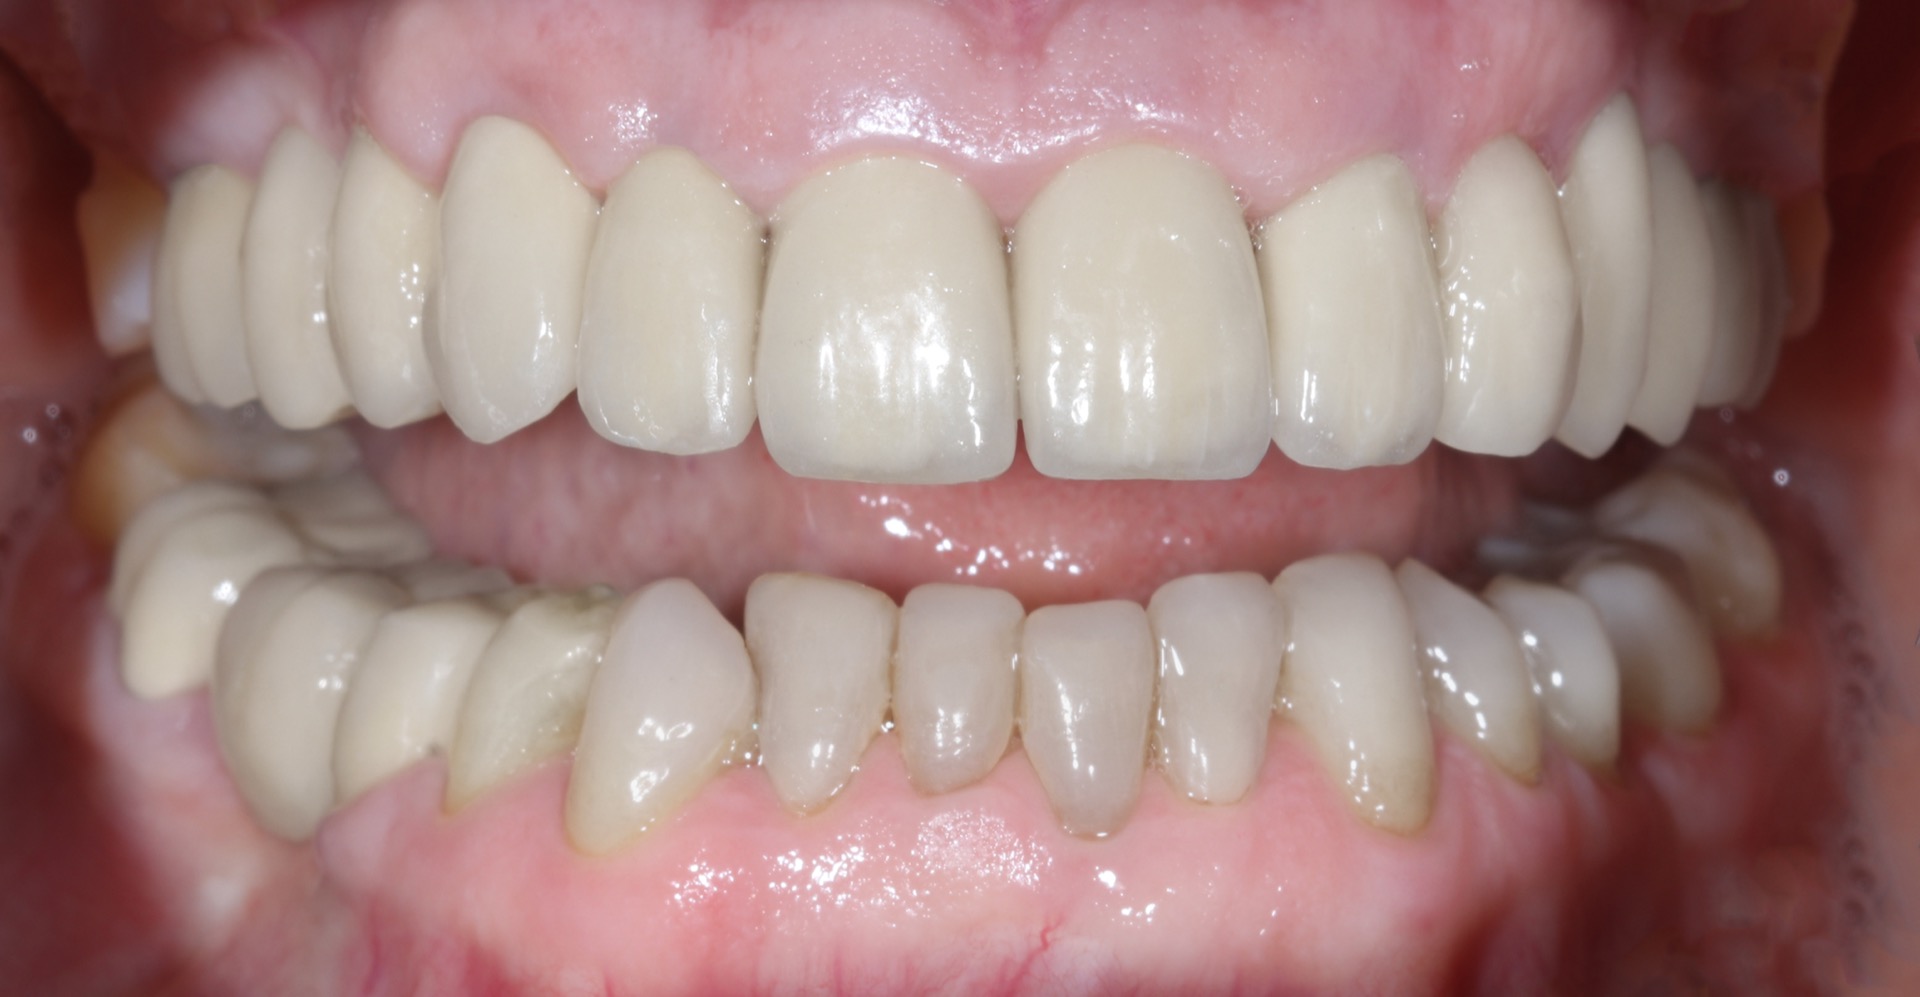 Τελική κατάσταση - Πρόσθια άποψη των αποκαταστάσεων τοποθετημένων στο στόμα (ελαφρώς ανοικτό στόμα) - Αποκατάσταση της αισθητικής και της σύγκλεισης της ασθενούς.